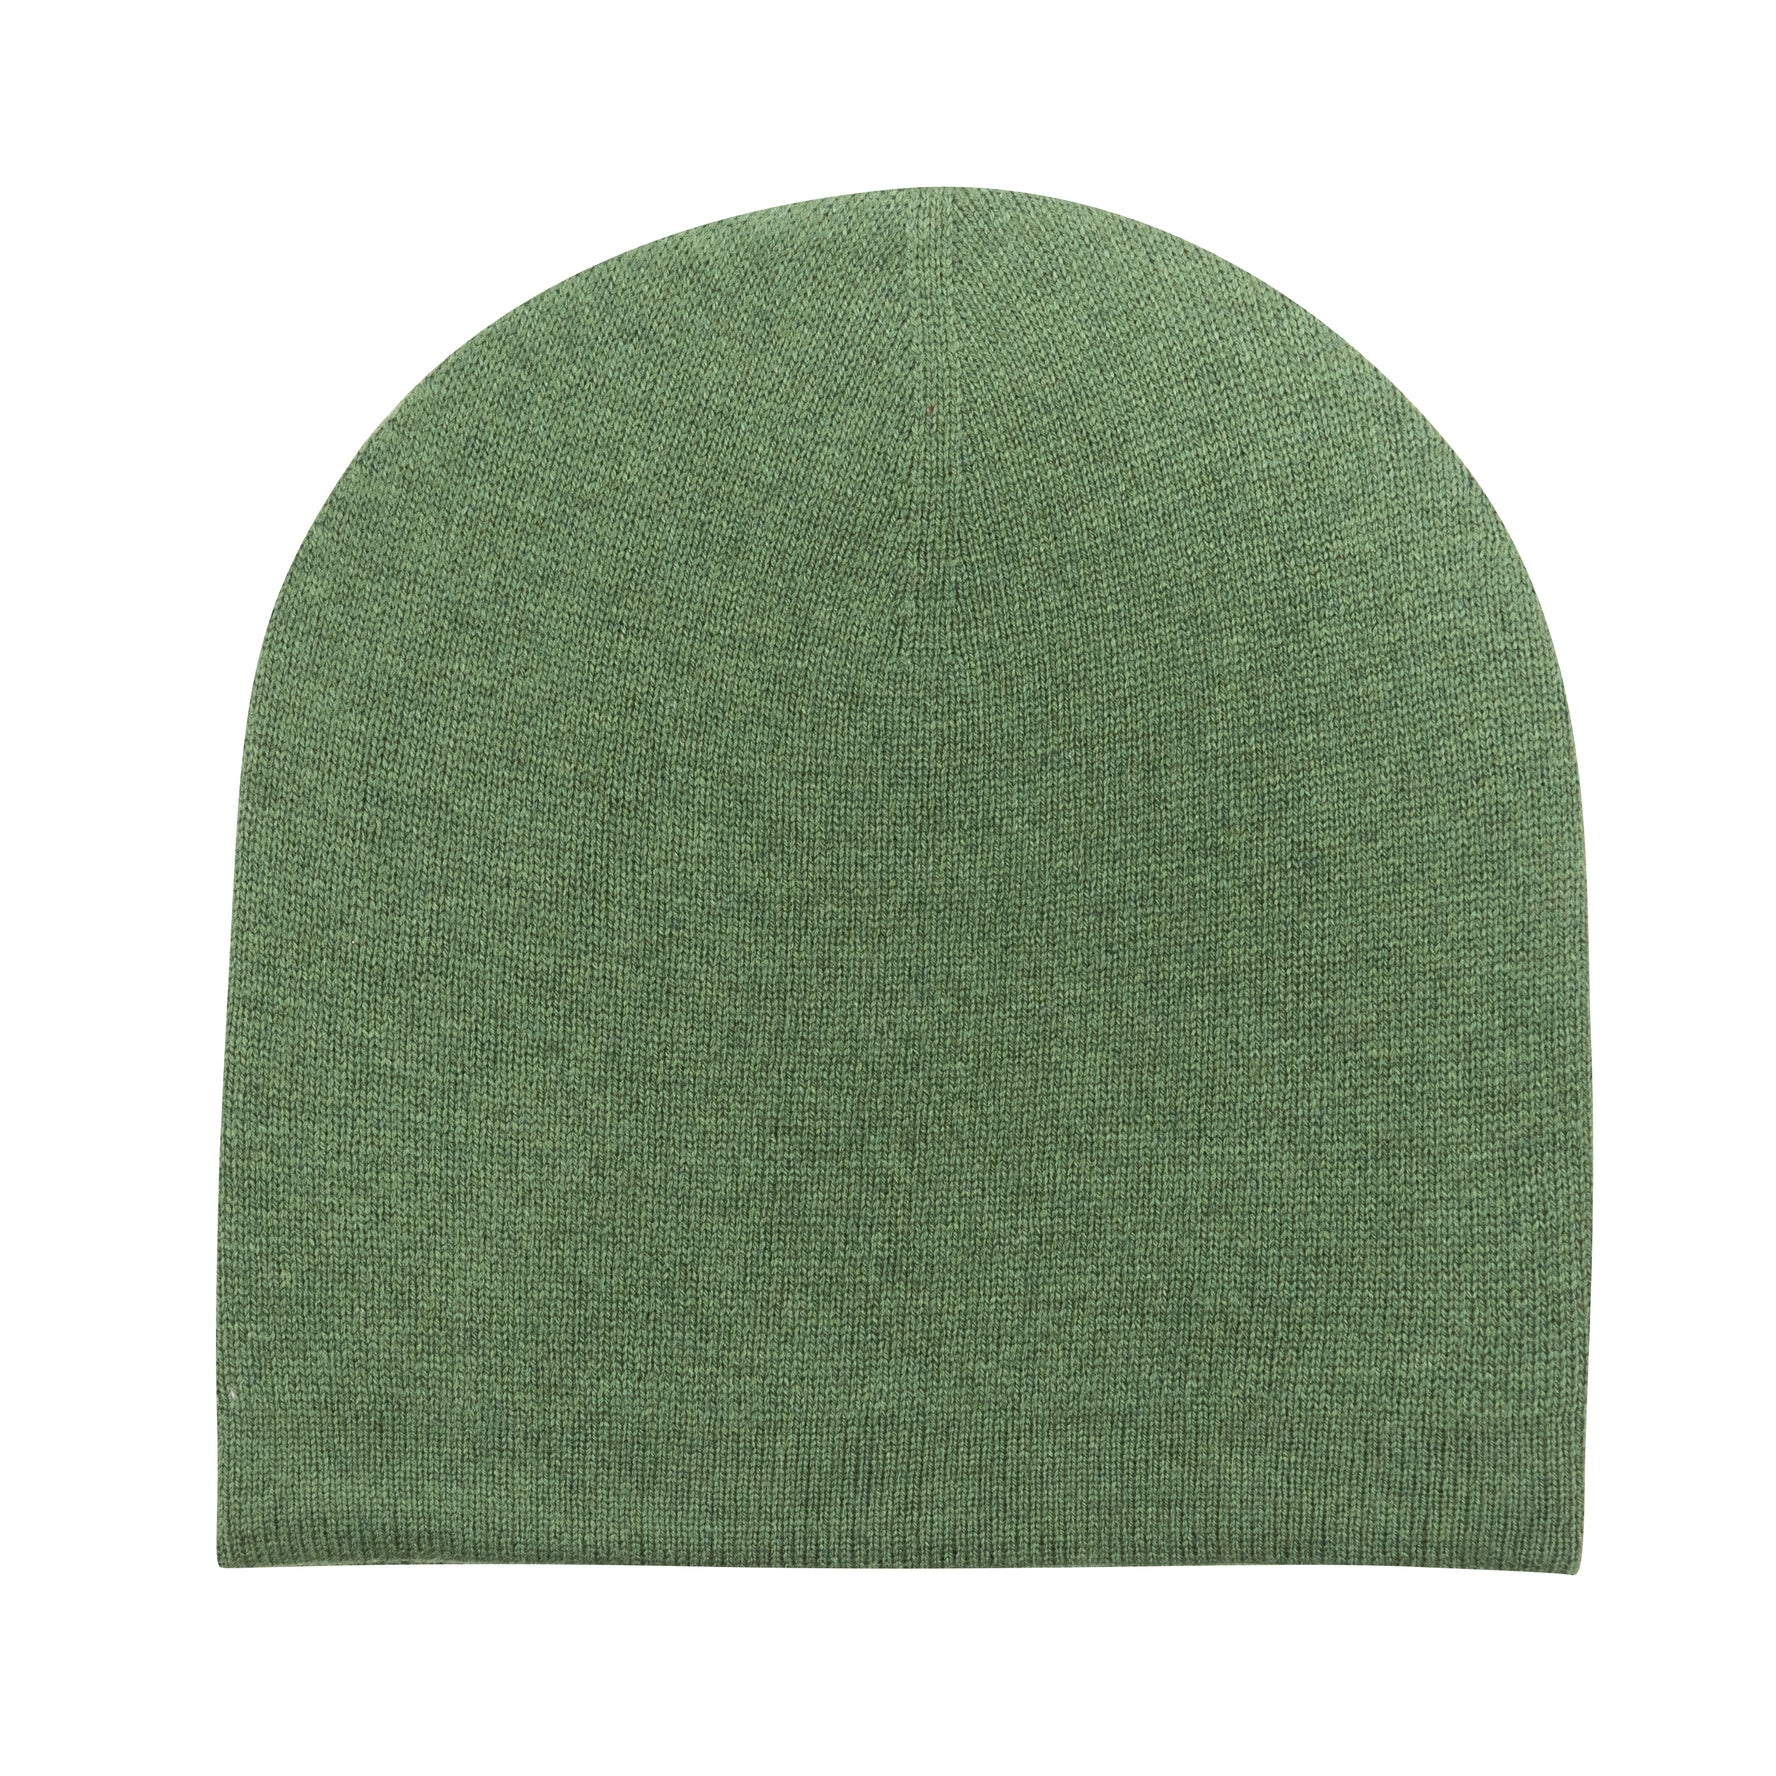 Bonnet bonnet cachemire lisse vert